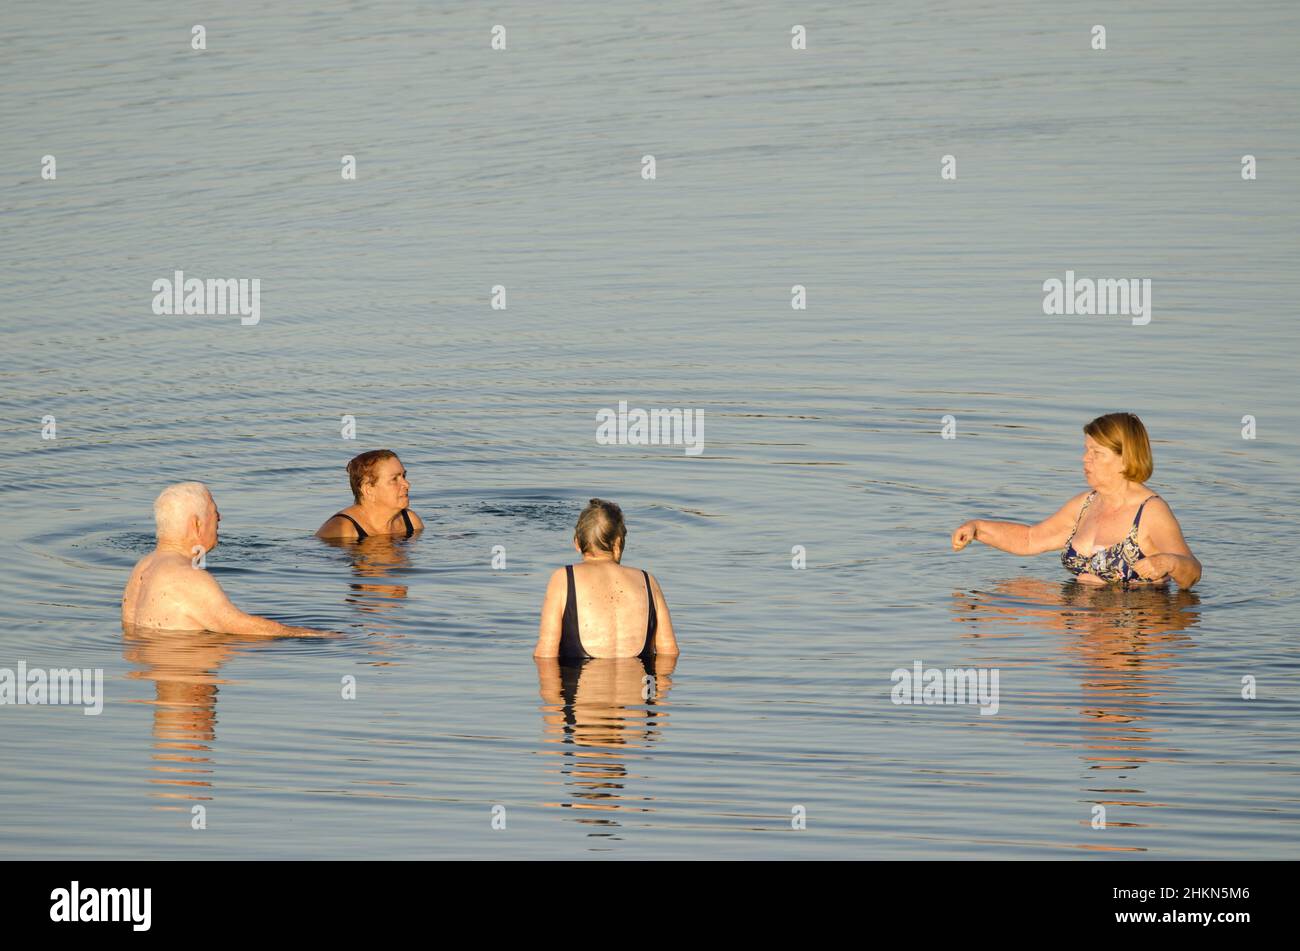 Playa de Arinaga, 30. März 2021: Ältere Menschen baden im Meer. Aguimes. Gran Canaria. Kanarische Inseln. Spanien. Stockfoto